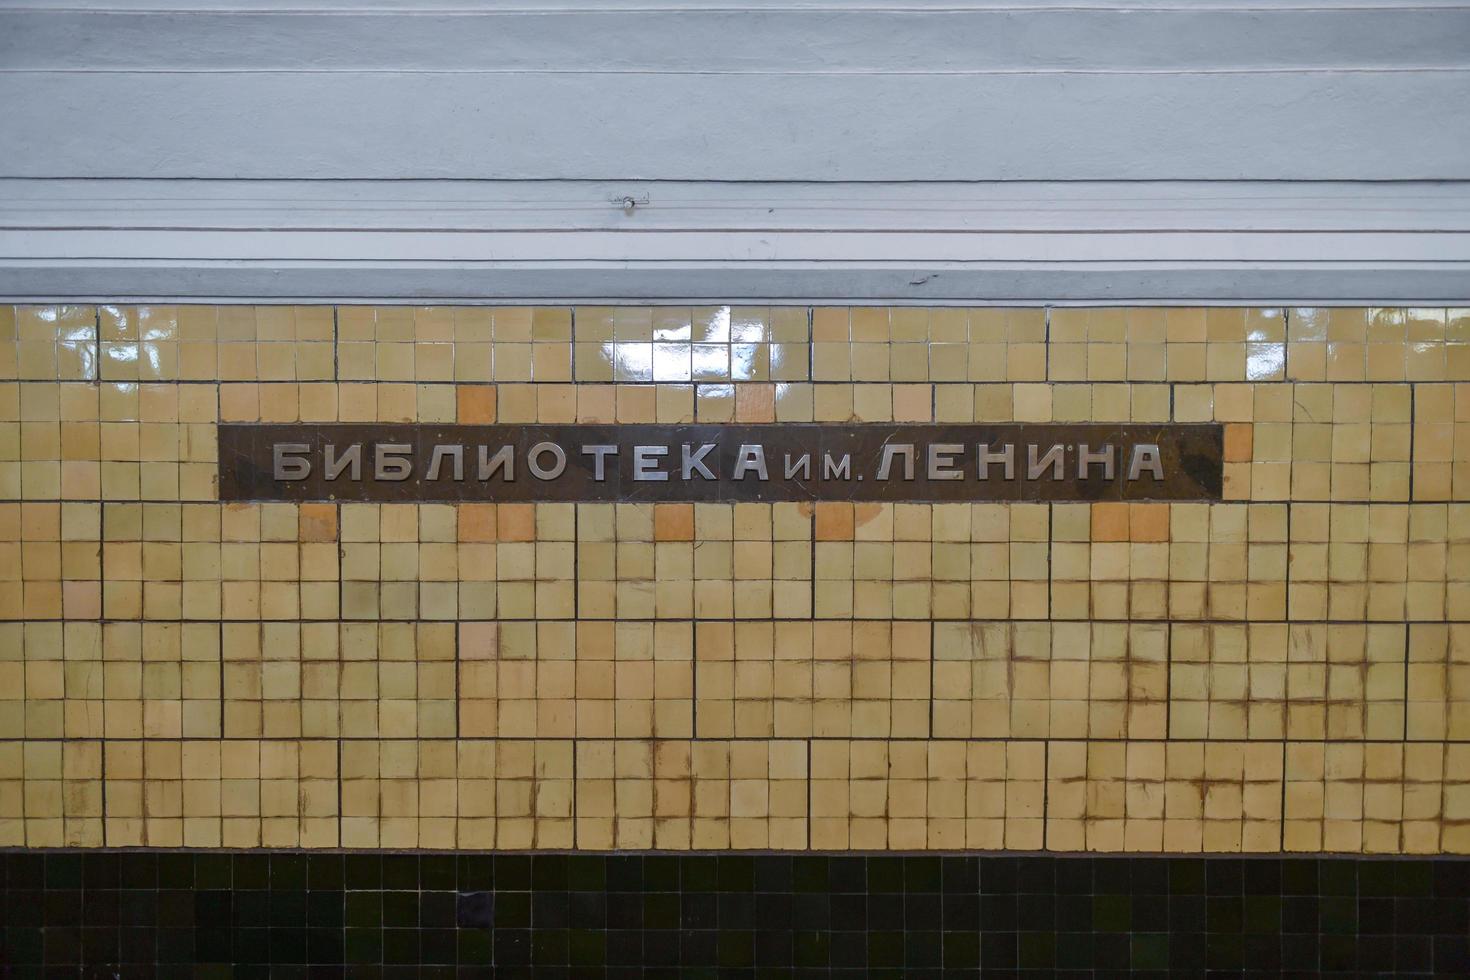 Moscou, Russie - 16 juillet 2018 - biblioteka imeni lenina sur le mur ferroviaire de la station homonyme du métro de Moscou, 2022 photo